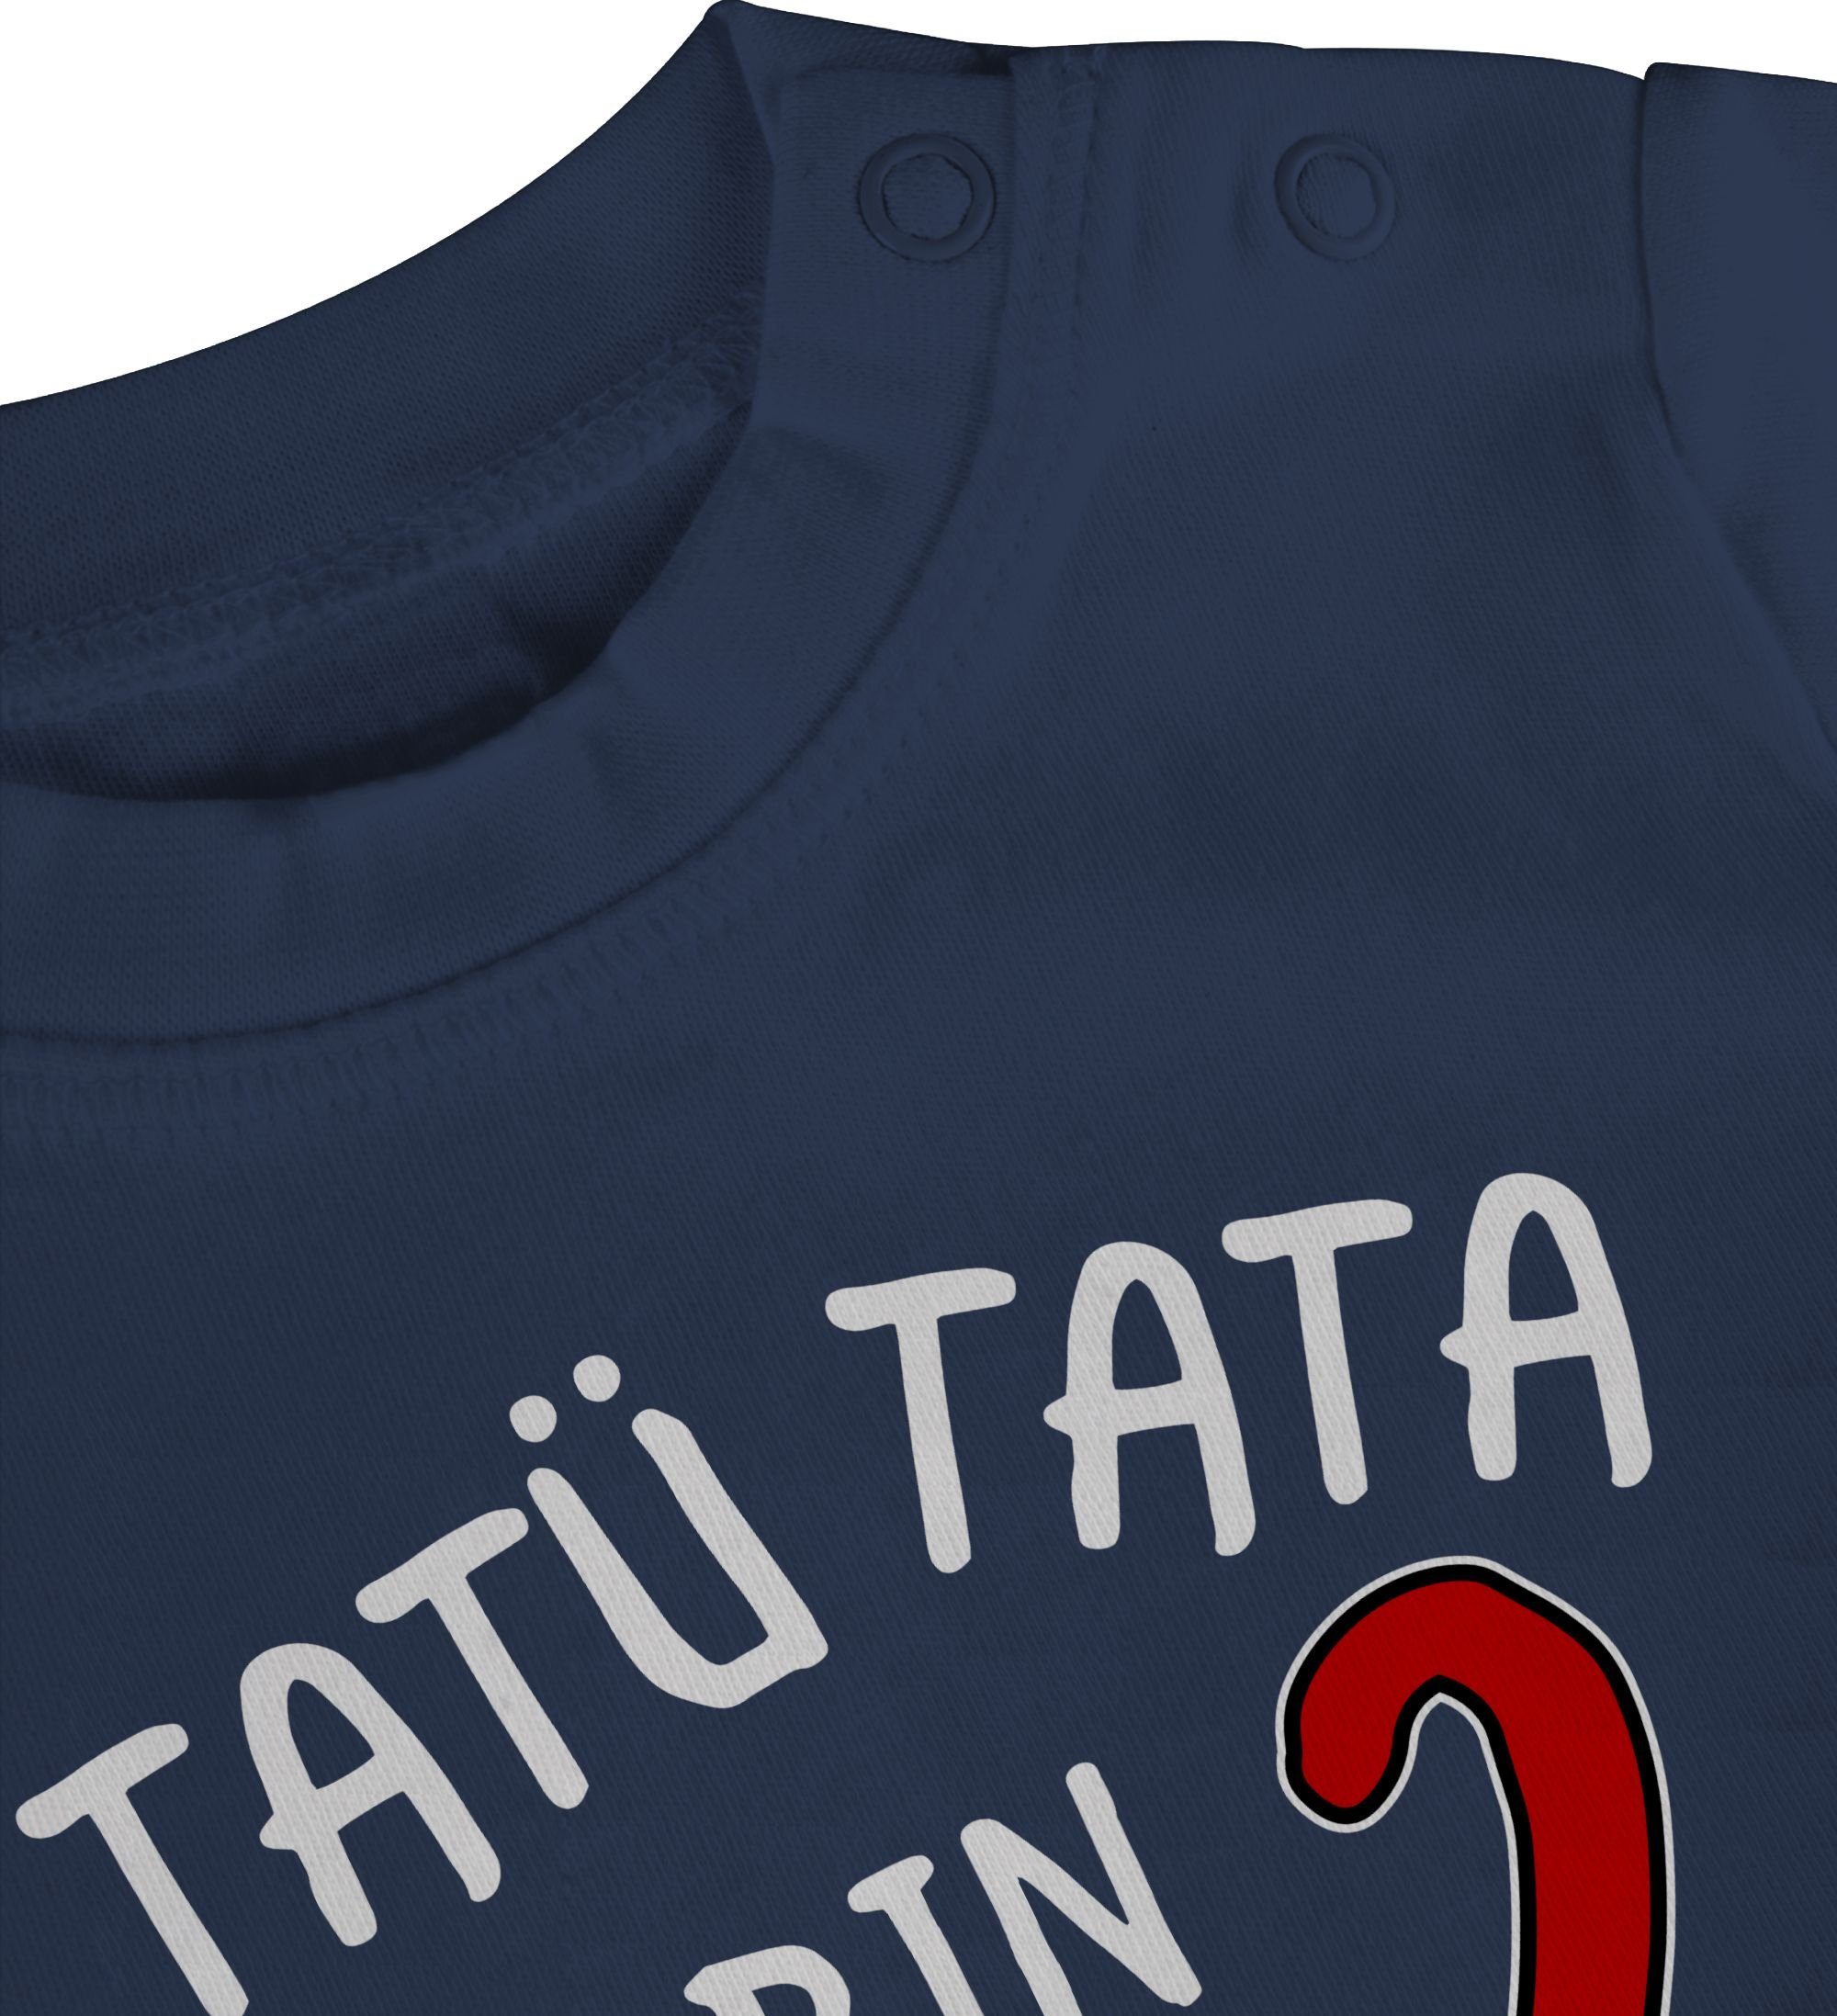 Geburtstag 1 Ich Navy Blau Shirtracer 2. Tata zwei Feuerwehrauto bin Tatü T-Shirt